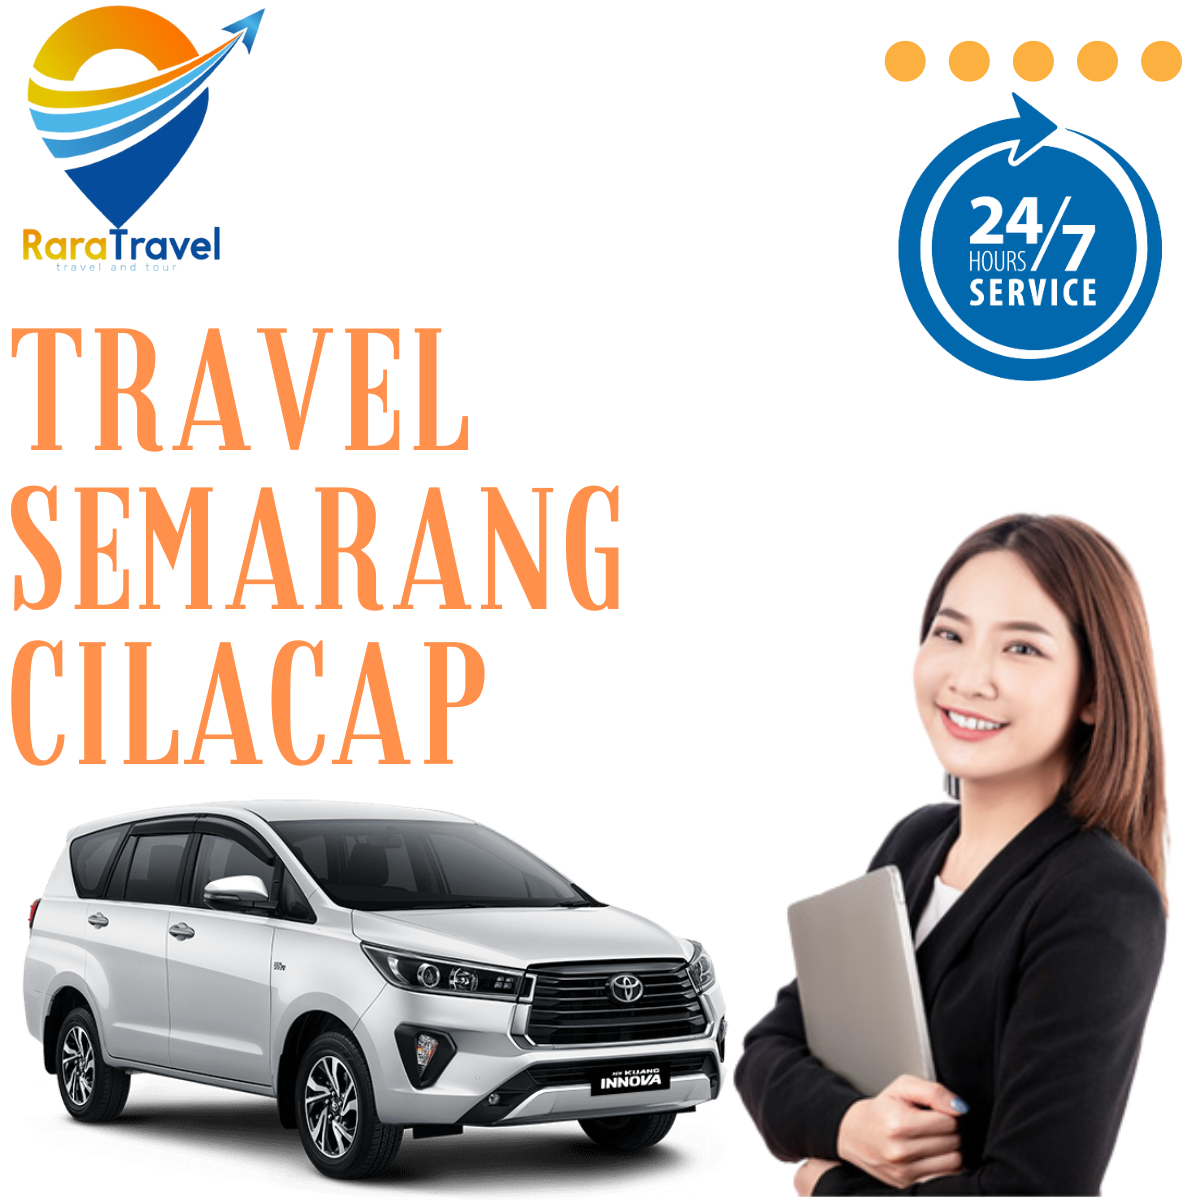 Travel Semarang Cilacap: Harga Tiket dan Jadwal di RARATRAVEL.ID